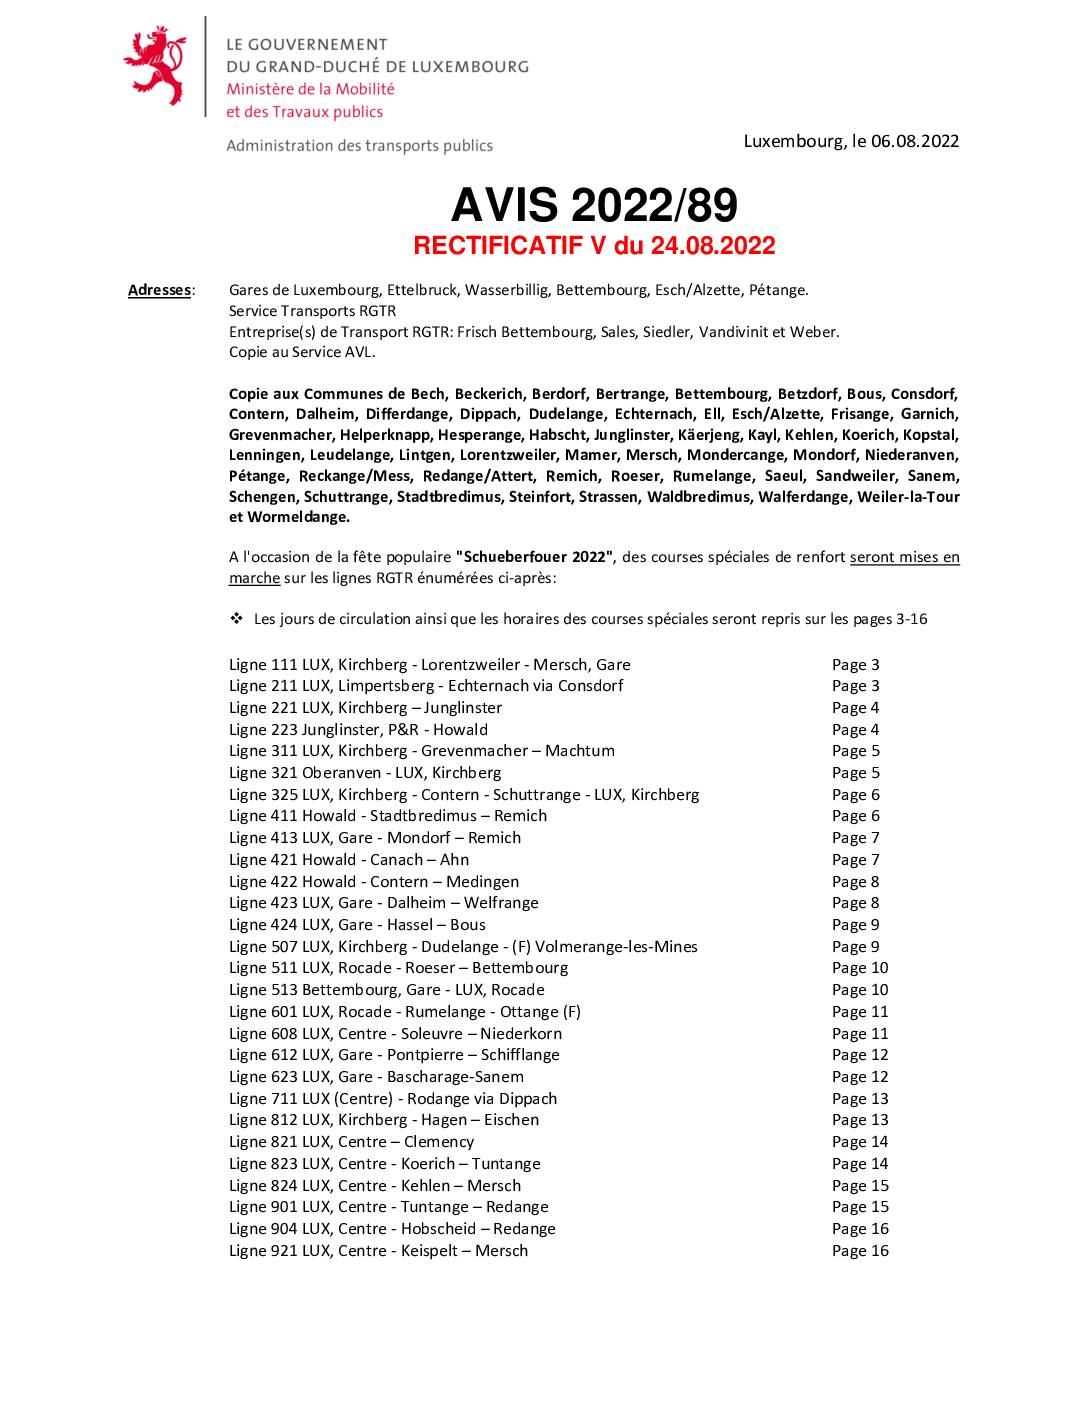 Avis RGTR - Renforcement courses spéciales Schueberfouer